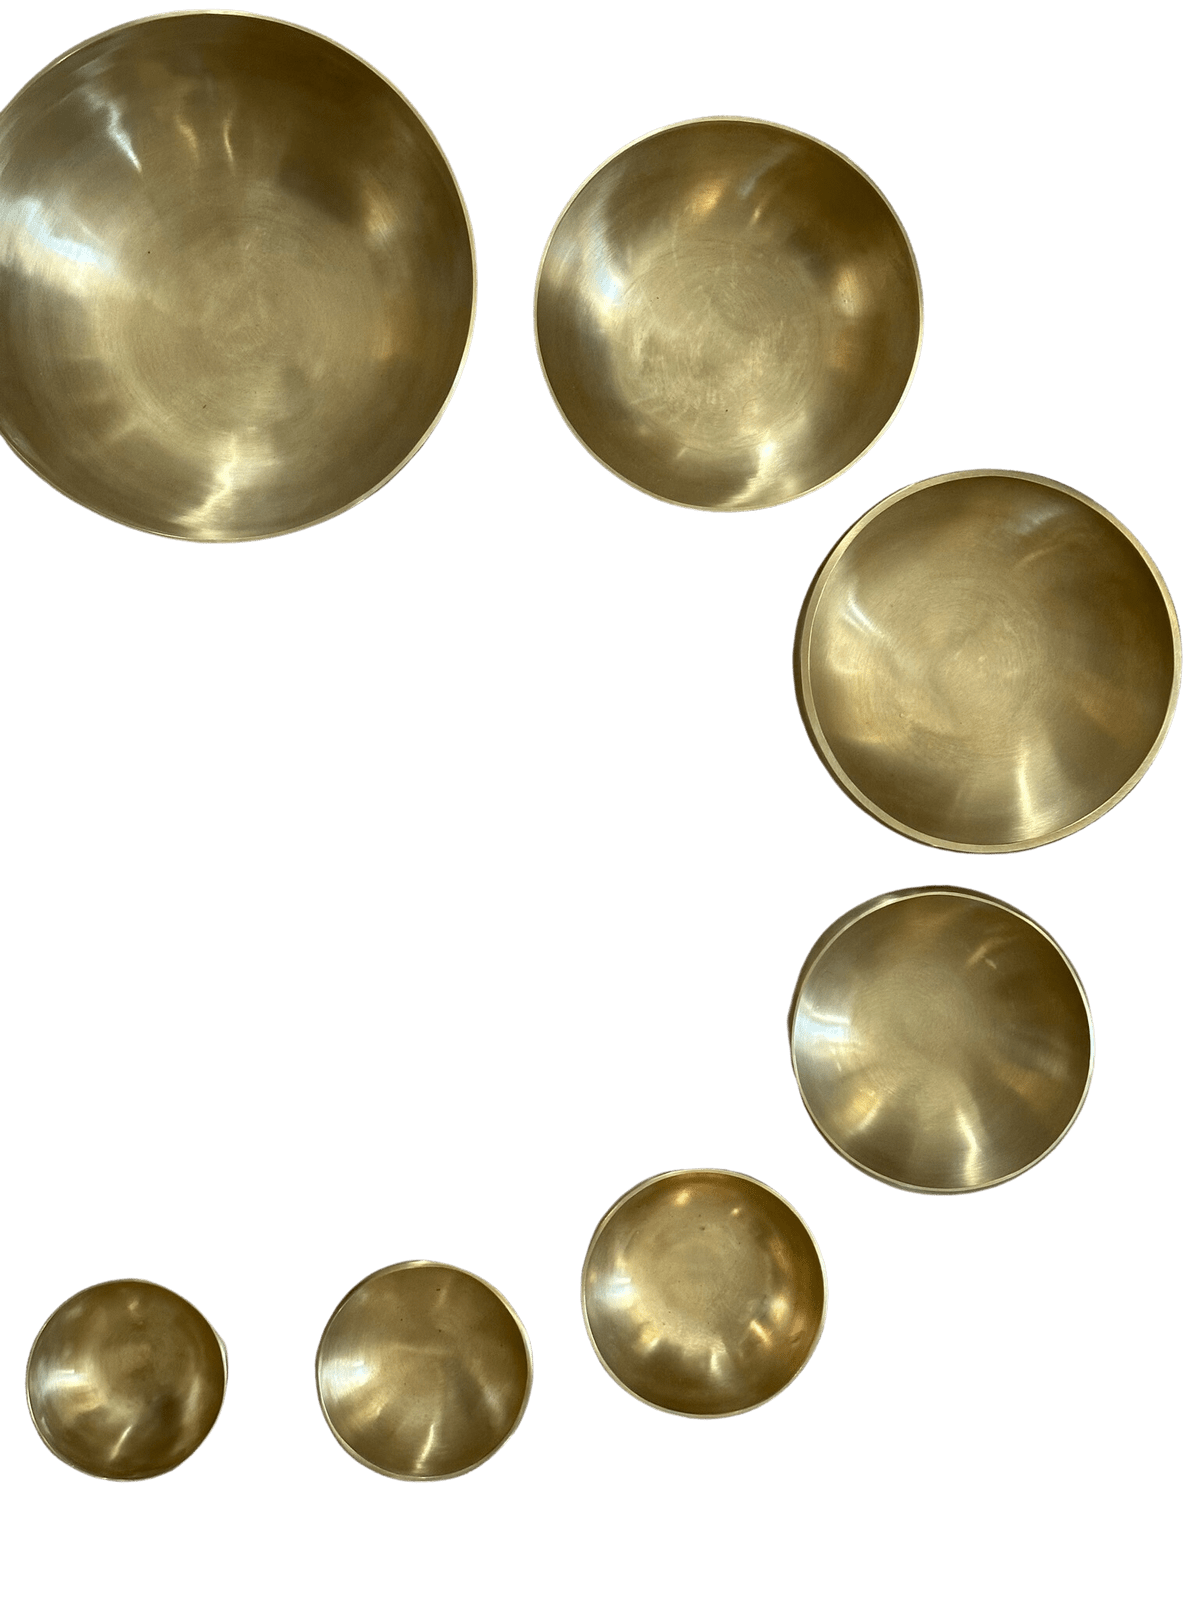 7 Tibetan Singing Bowls